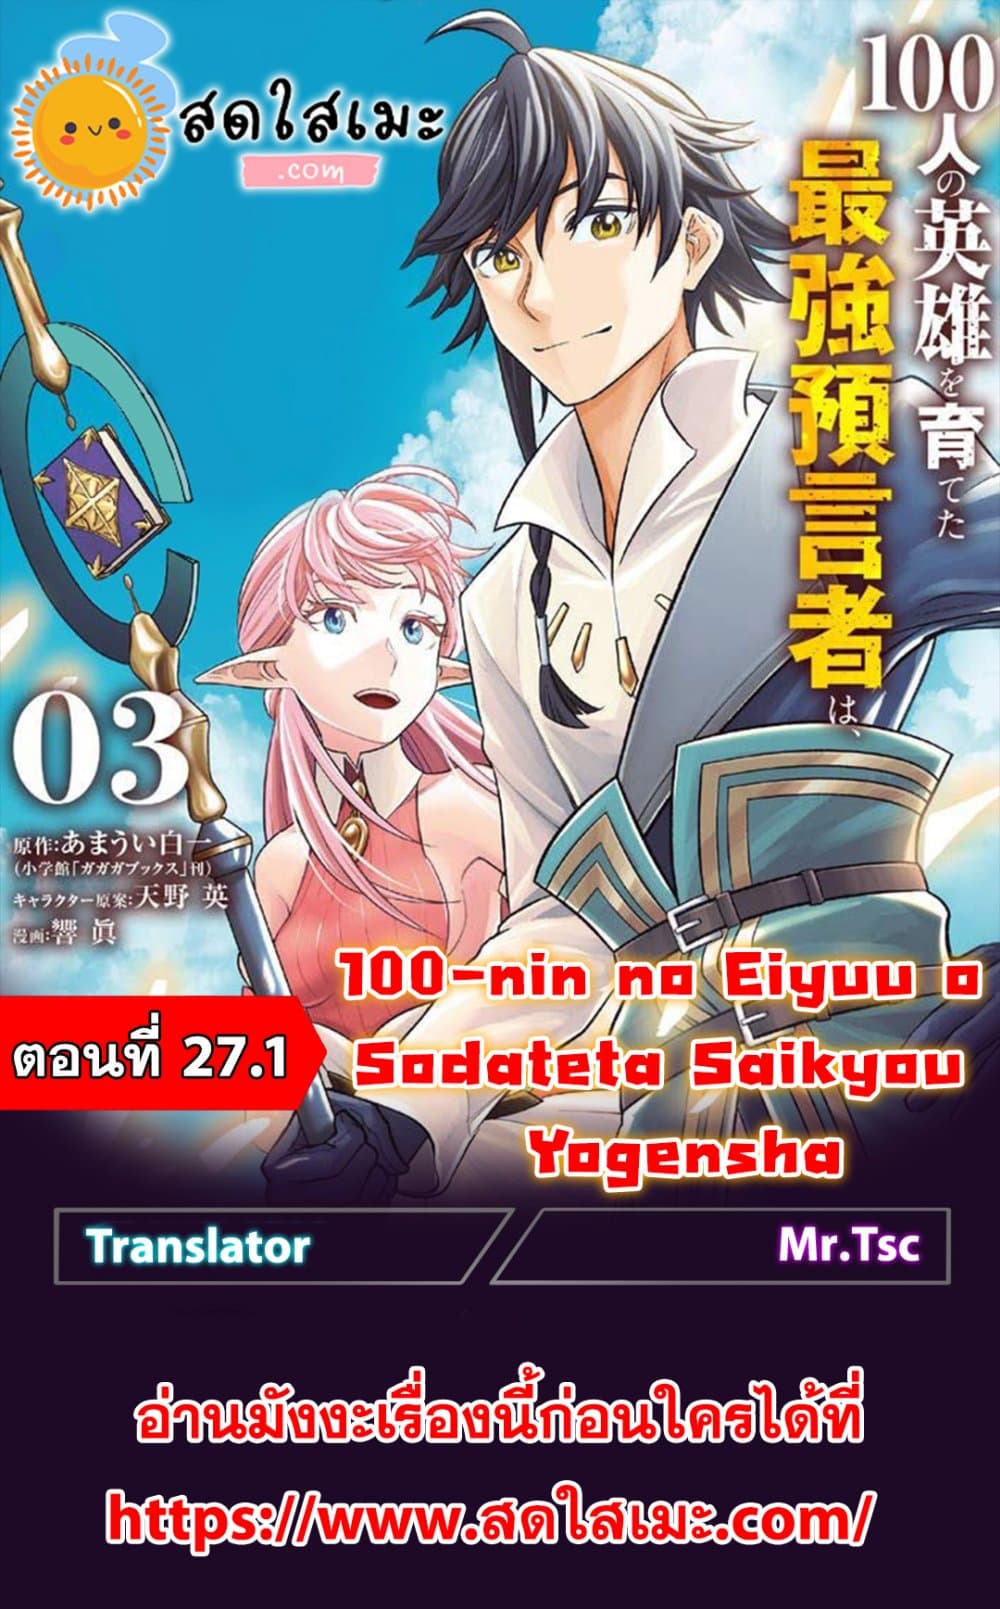 100 nin no Eiyuu o Sodateta Saikyou Yogensha wa 27.1 (1)